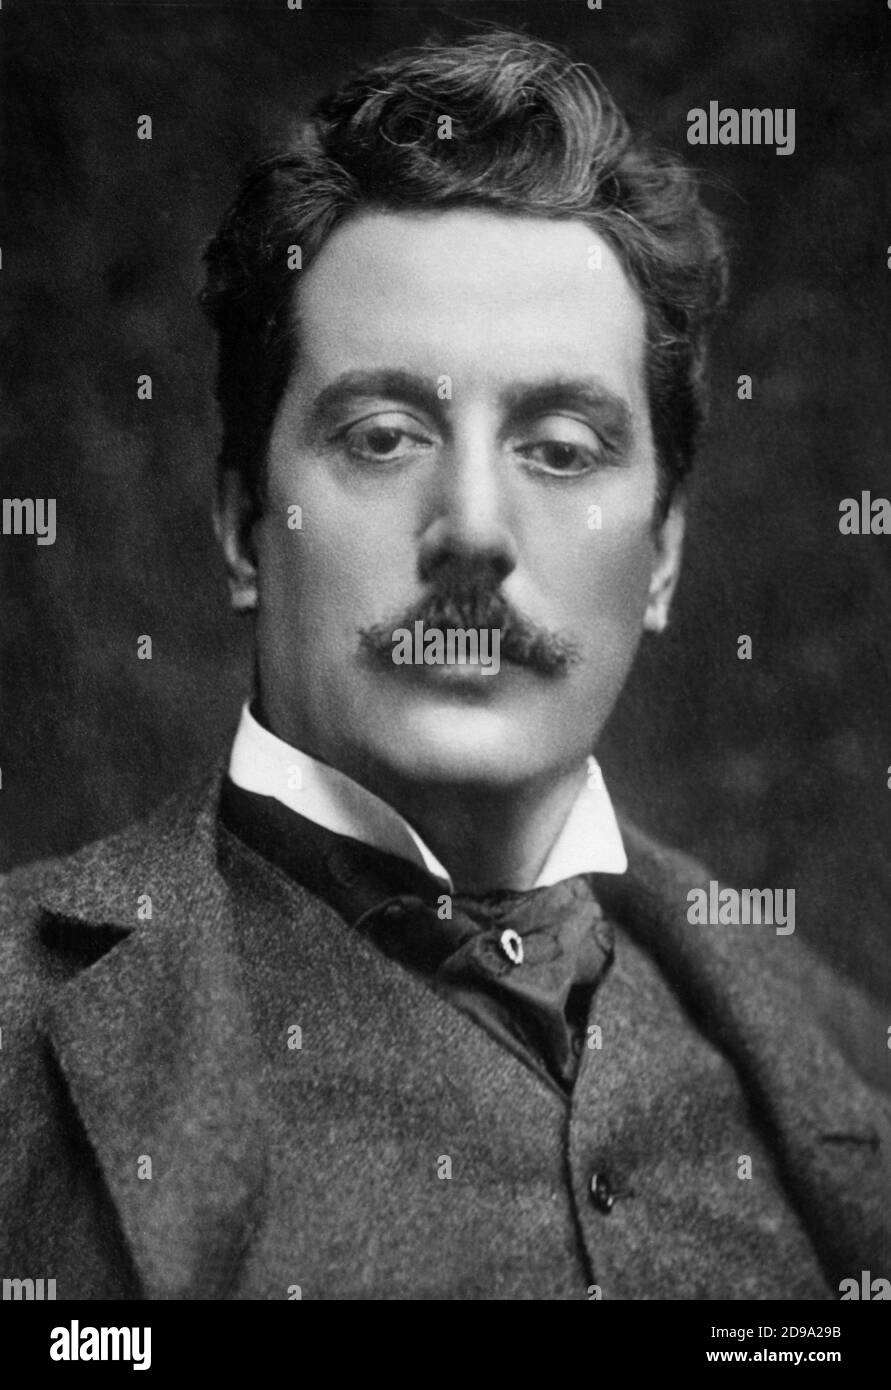 1900 ca , ITALIA : il celebre compositore italiano GIACOMO PUCCINI ( 1858 - 1924 ) - OPERA LIRICA - COMPOSITORE - MUSICA - ritratto - ritratto - baffi - baffi - CLASSICA - CLASSICA - COMPOSITORE LIRICO - ritratto - cravatta - baffi - baffi -fermacravatta - pinn - colletto - colletto - MUSICA --- ARCHIVIO GBB Foto Stock